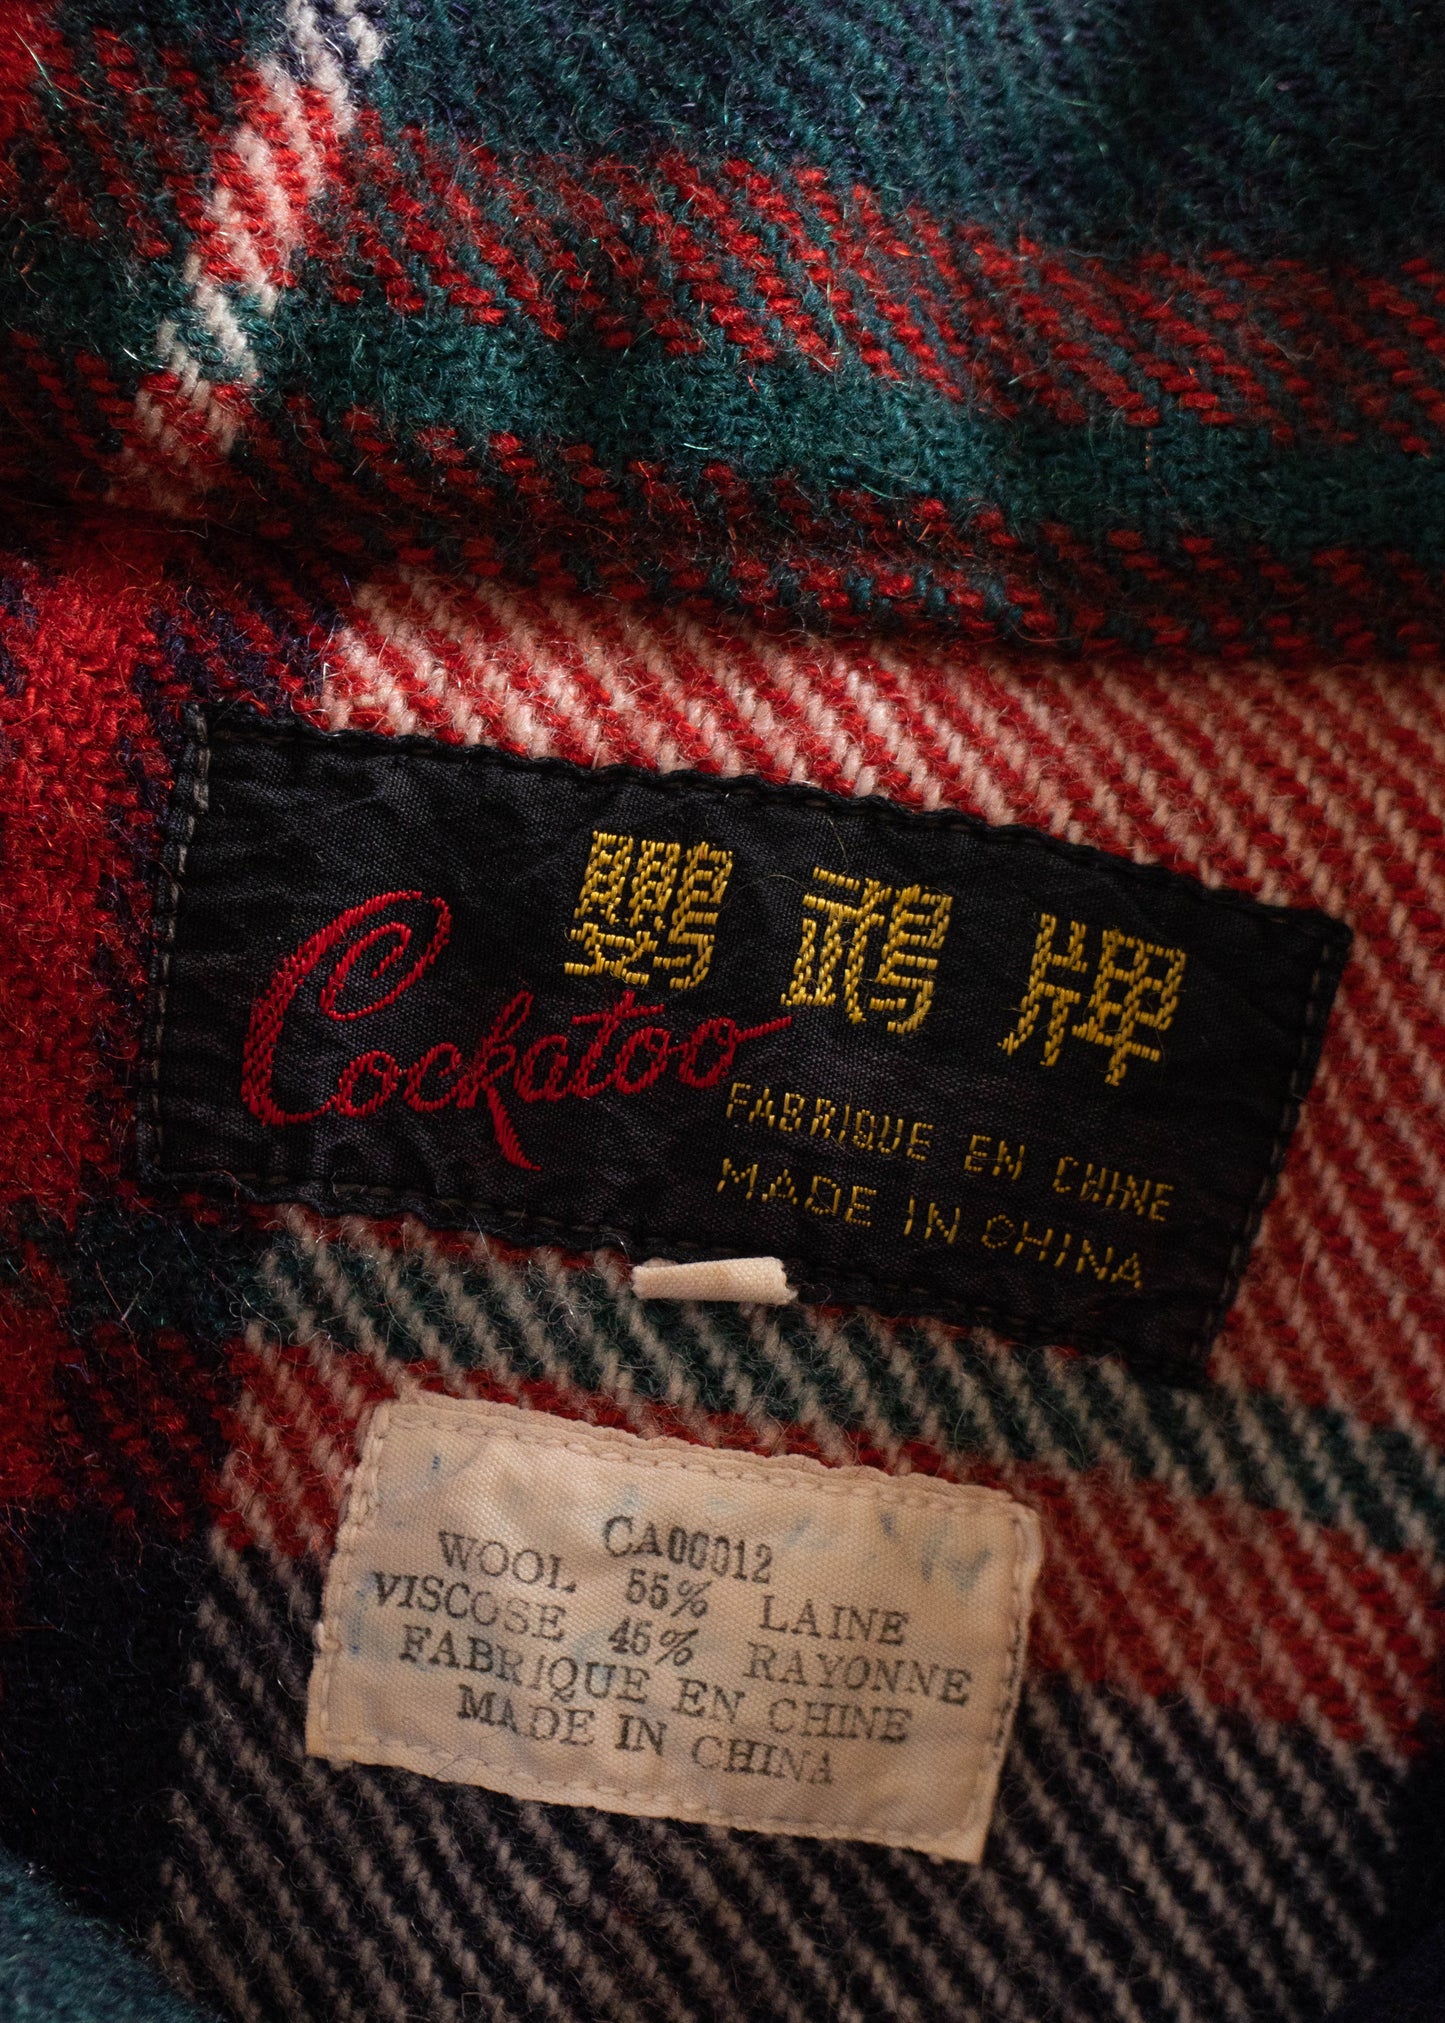 1950s Cockatoo Plaid Wool Jacket Size M/L